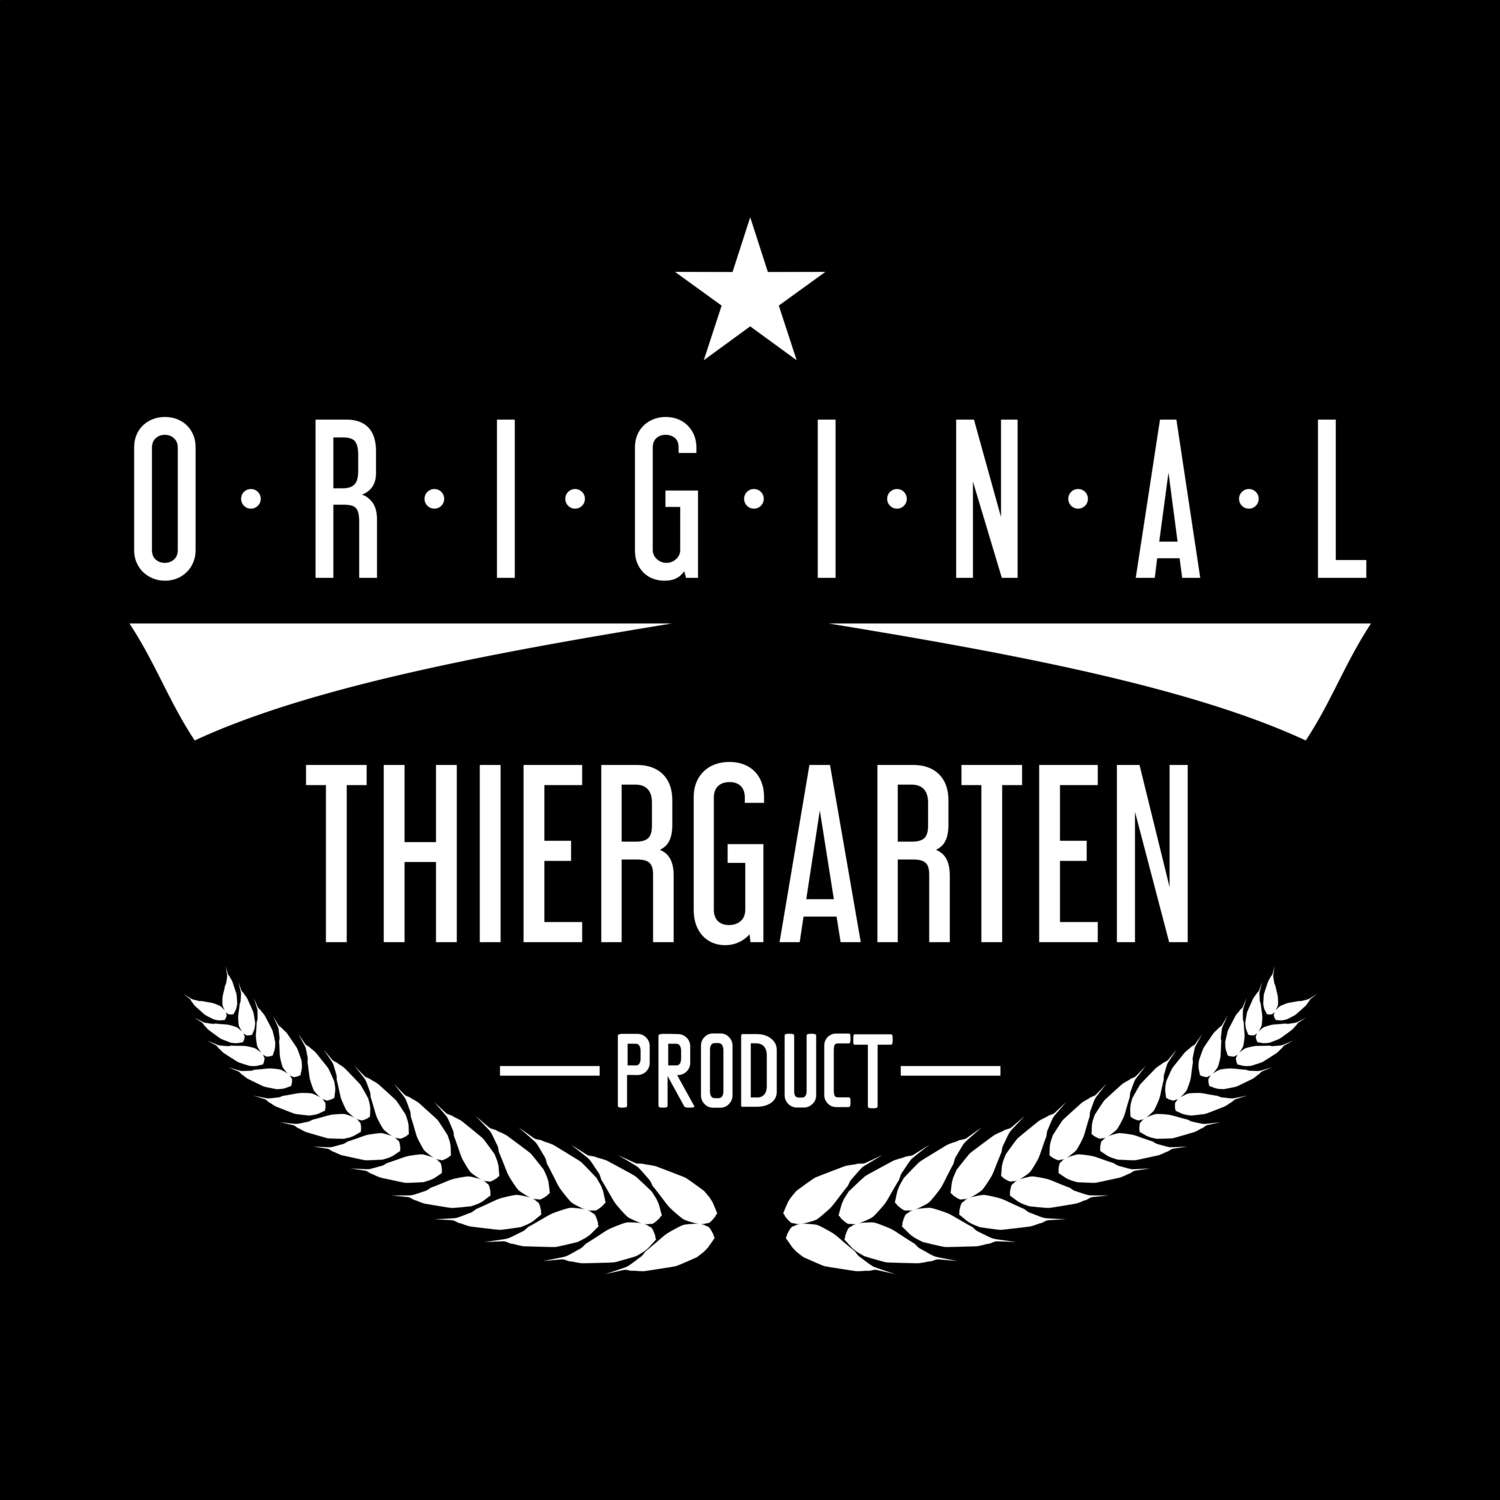 Thiergarten T-Shirt »Original Product«